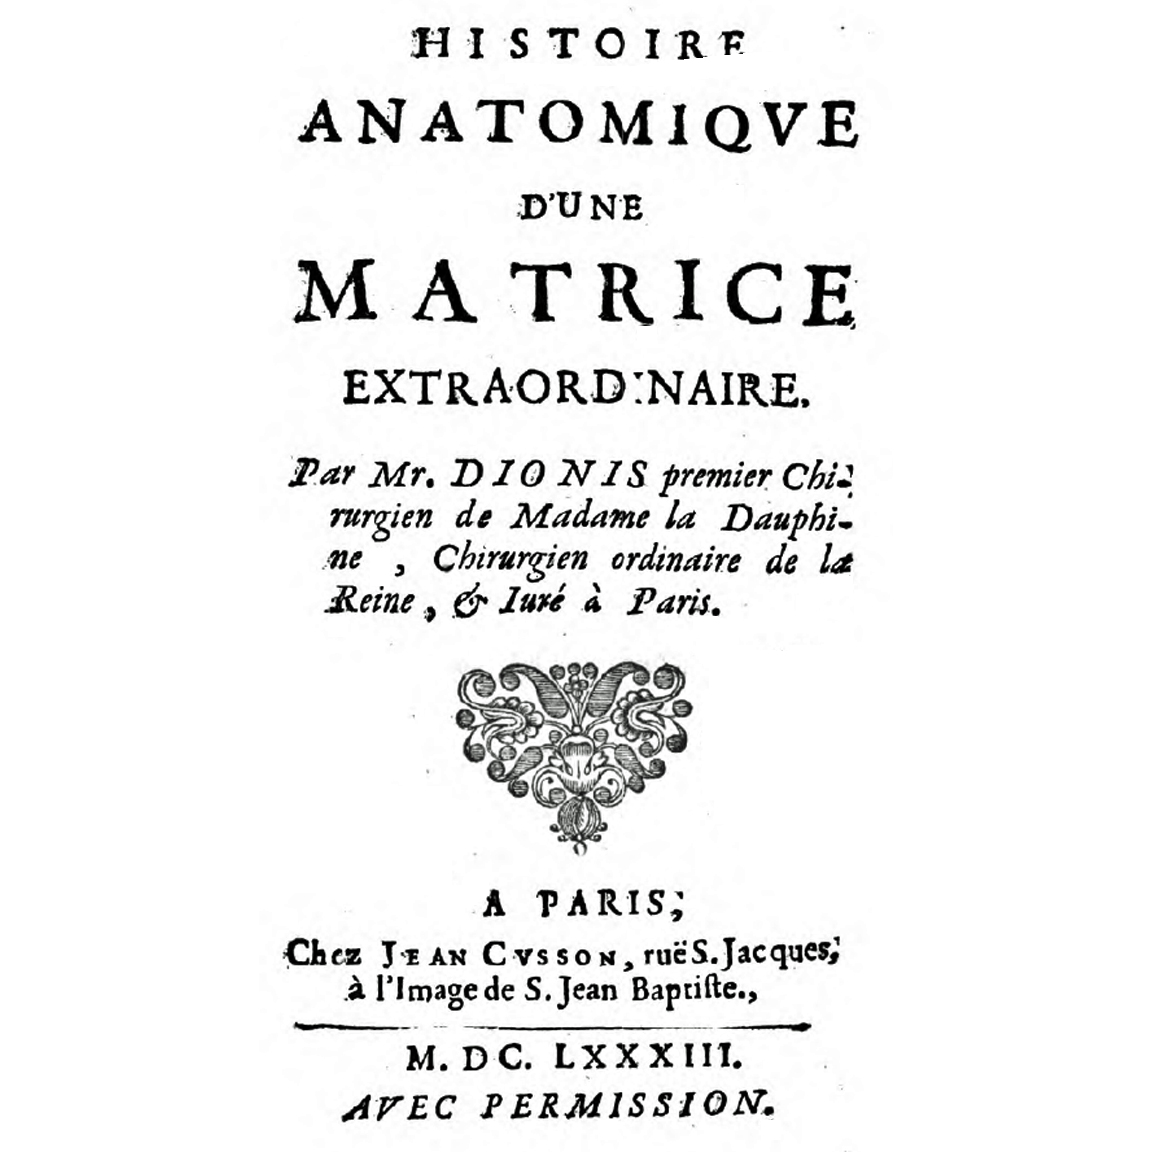 1683-DIONIS-HistoireAnatomiqueMatrice-titre